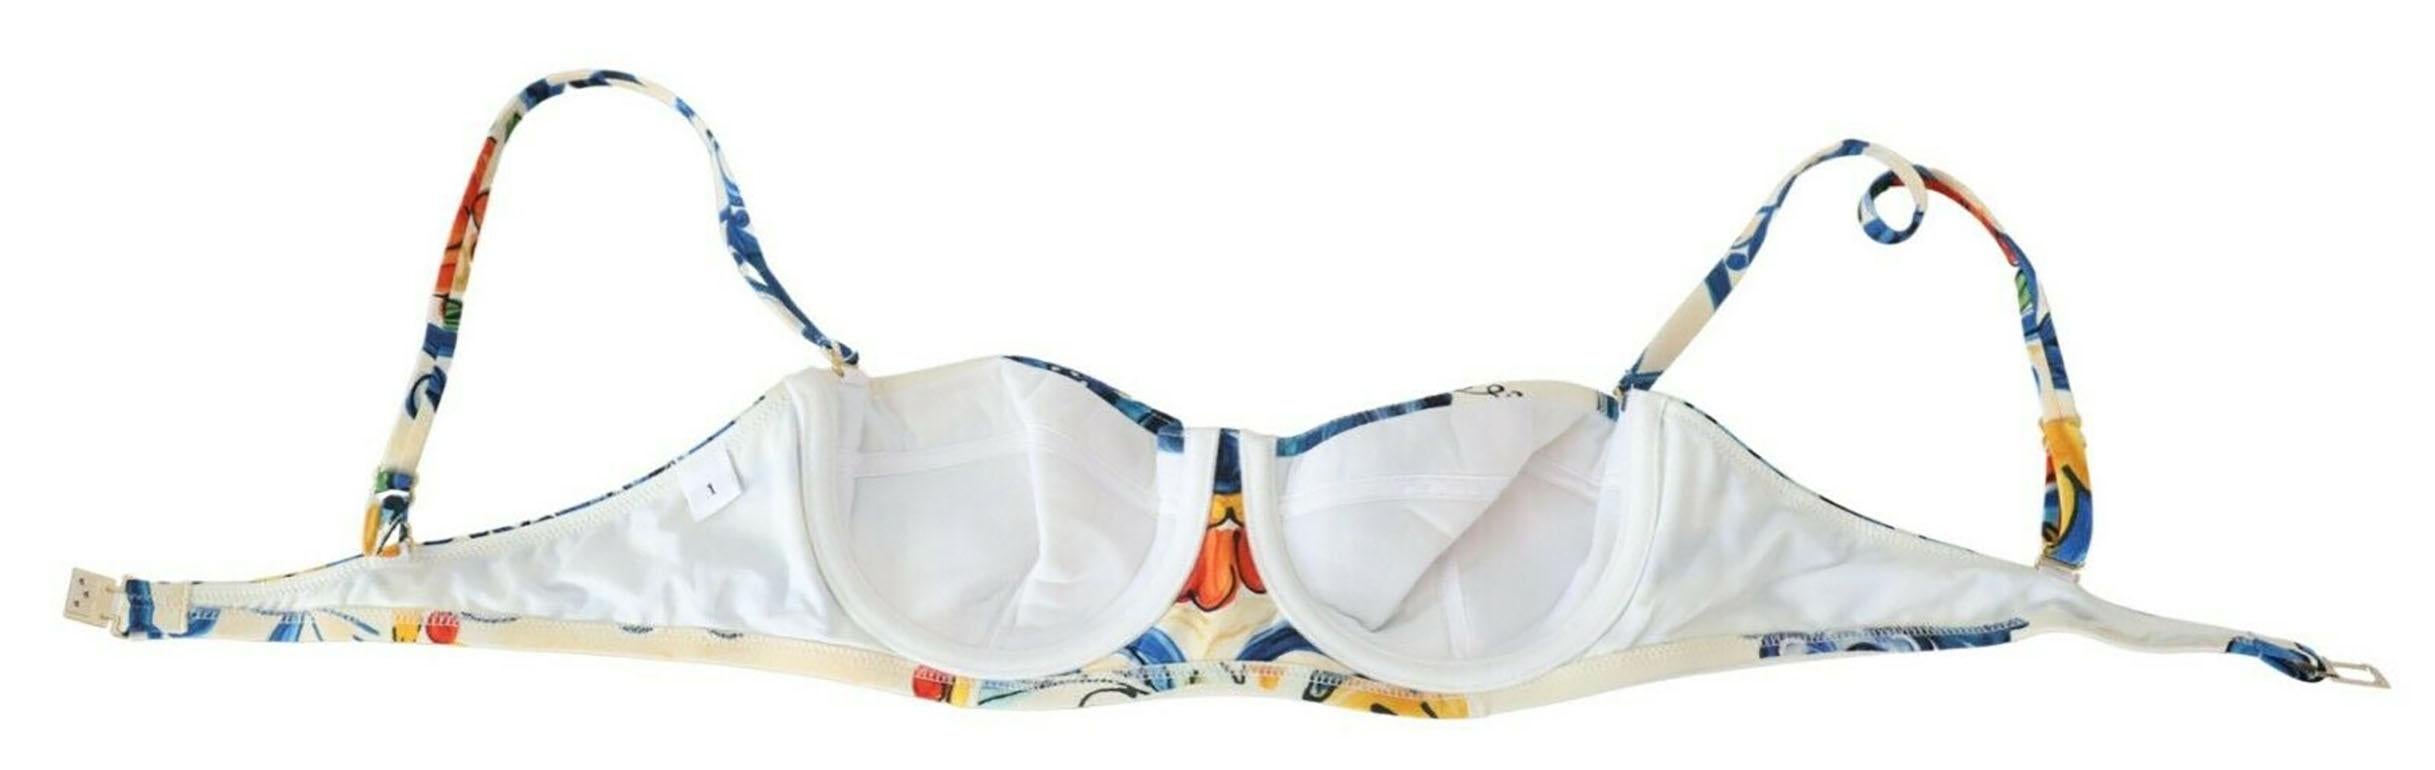 Dolce & Gabbana Multicolor Lemon Majolica Swimsuit Swimwear Bikini Beachwear  In New Condition In WELWYN, GB